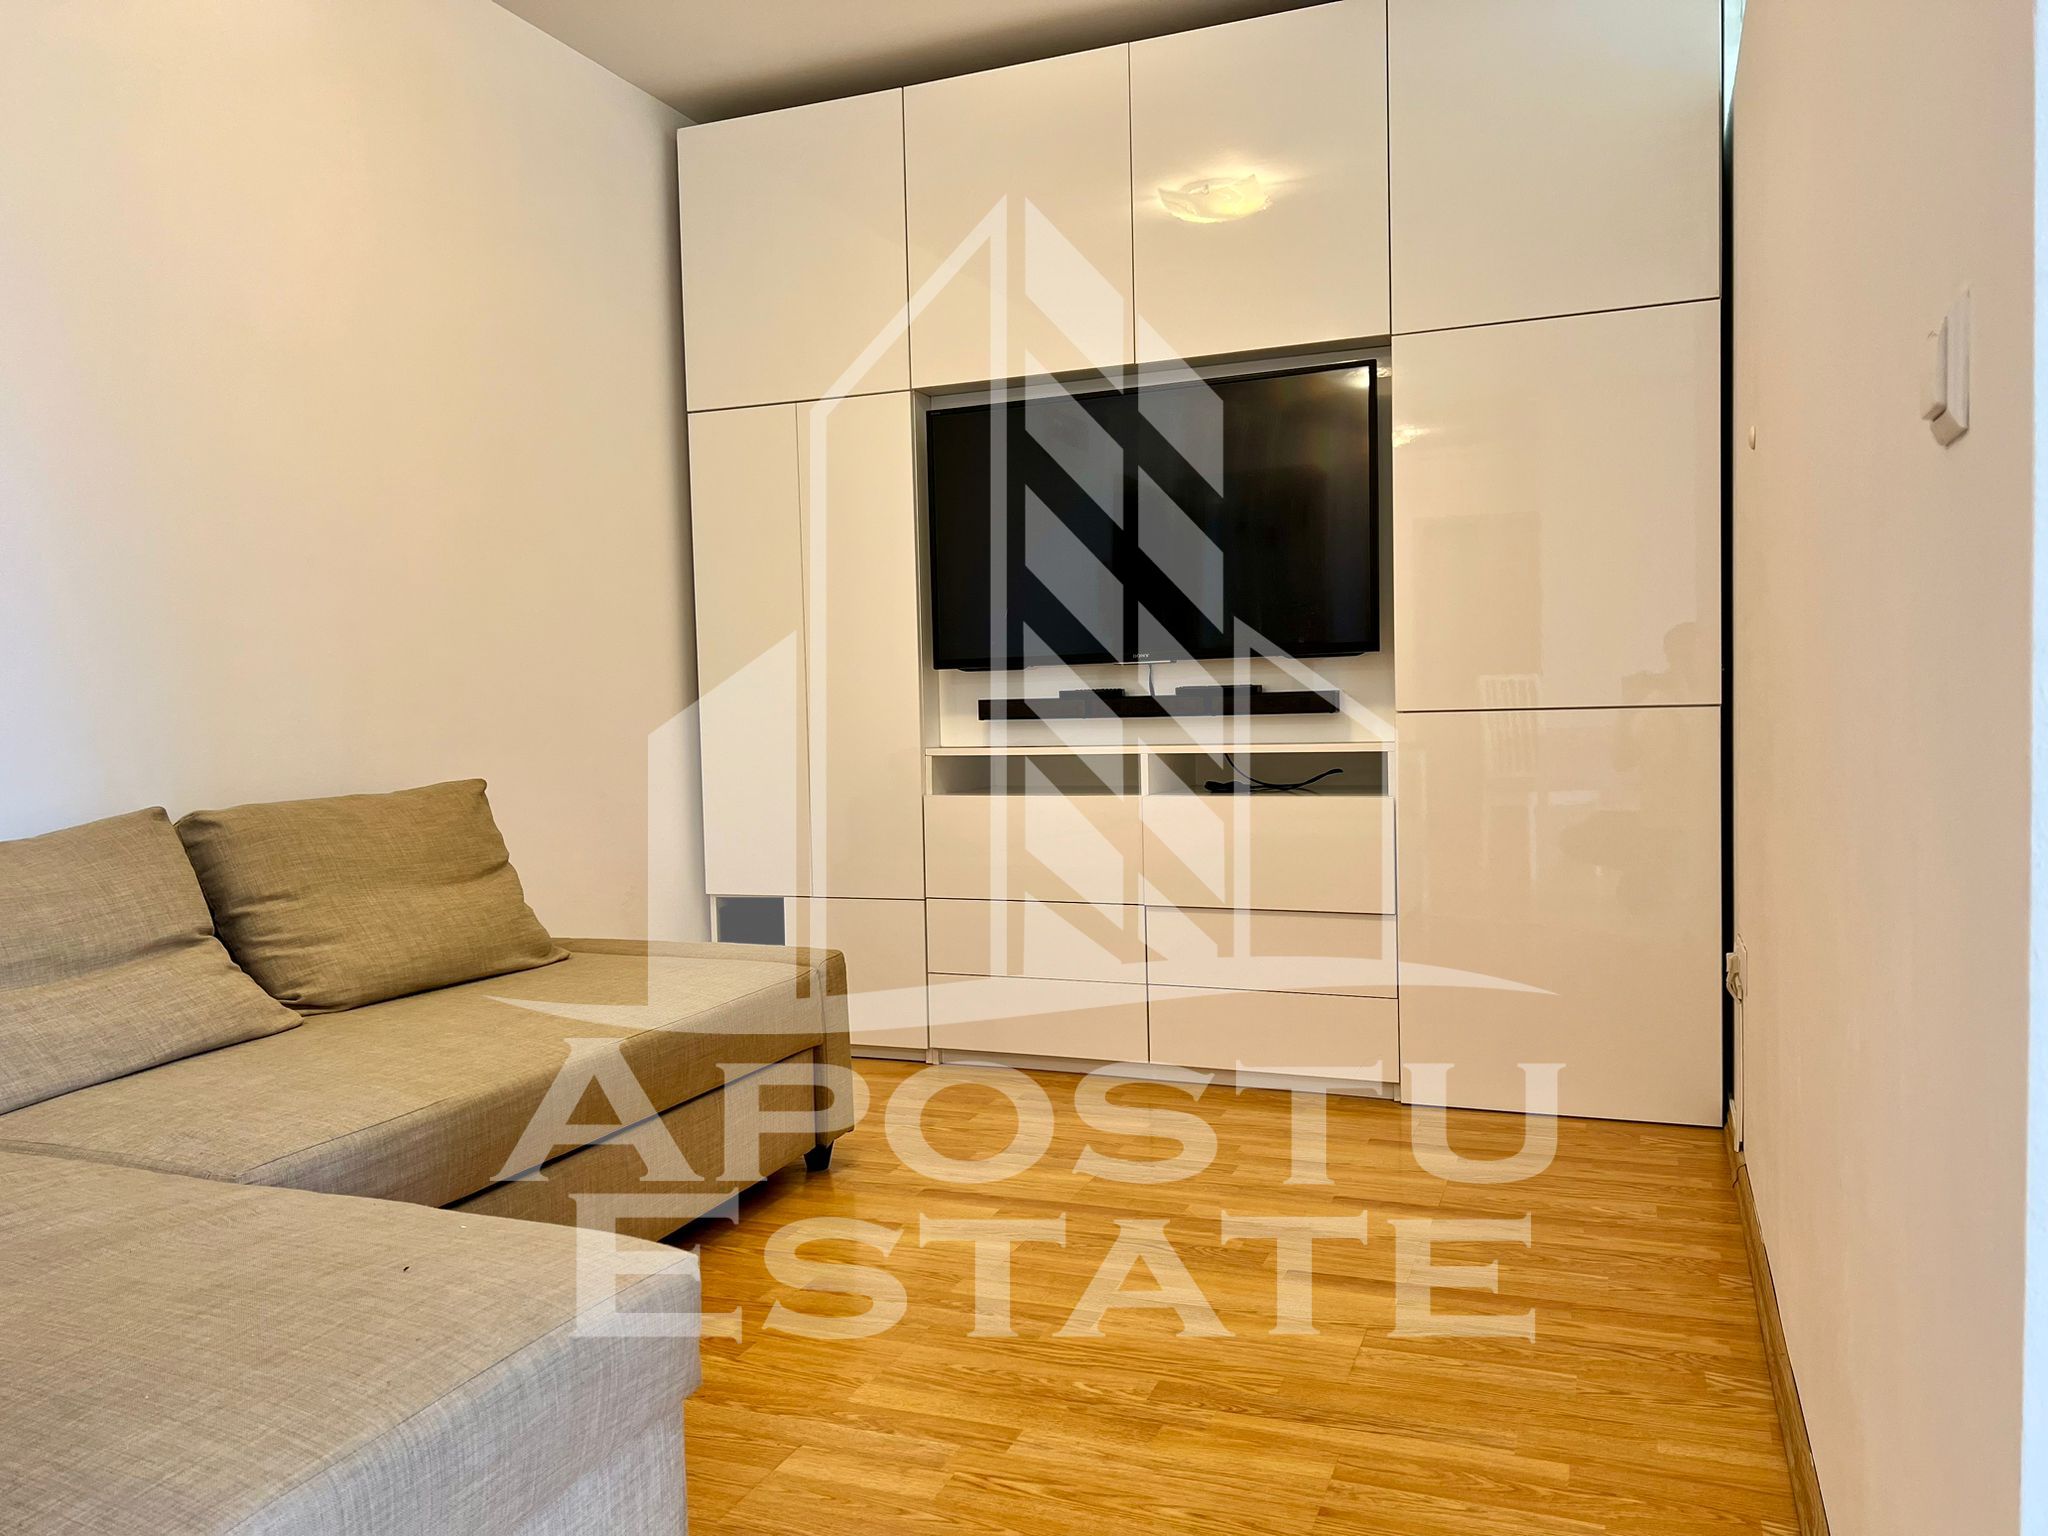 Apartament modern 2 camere, 2 locuri de parcare, Aradului